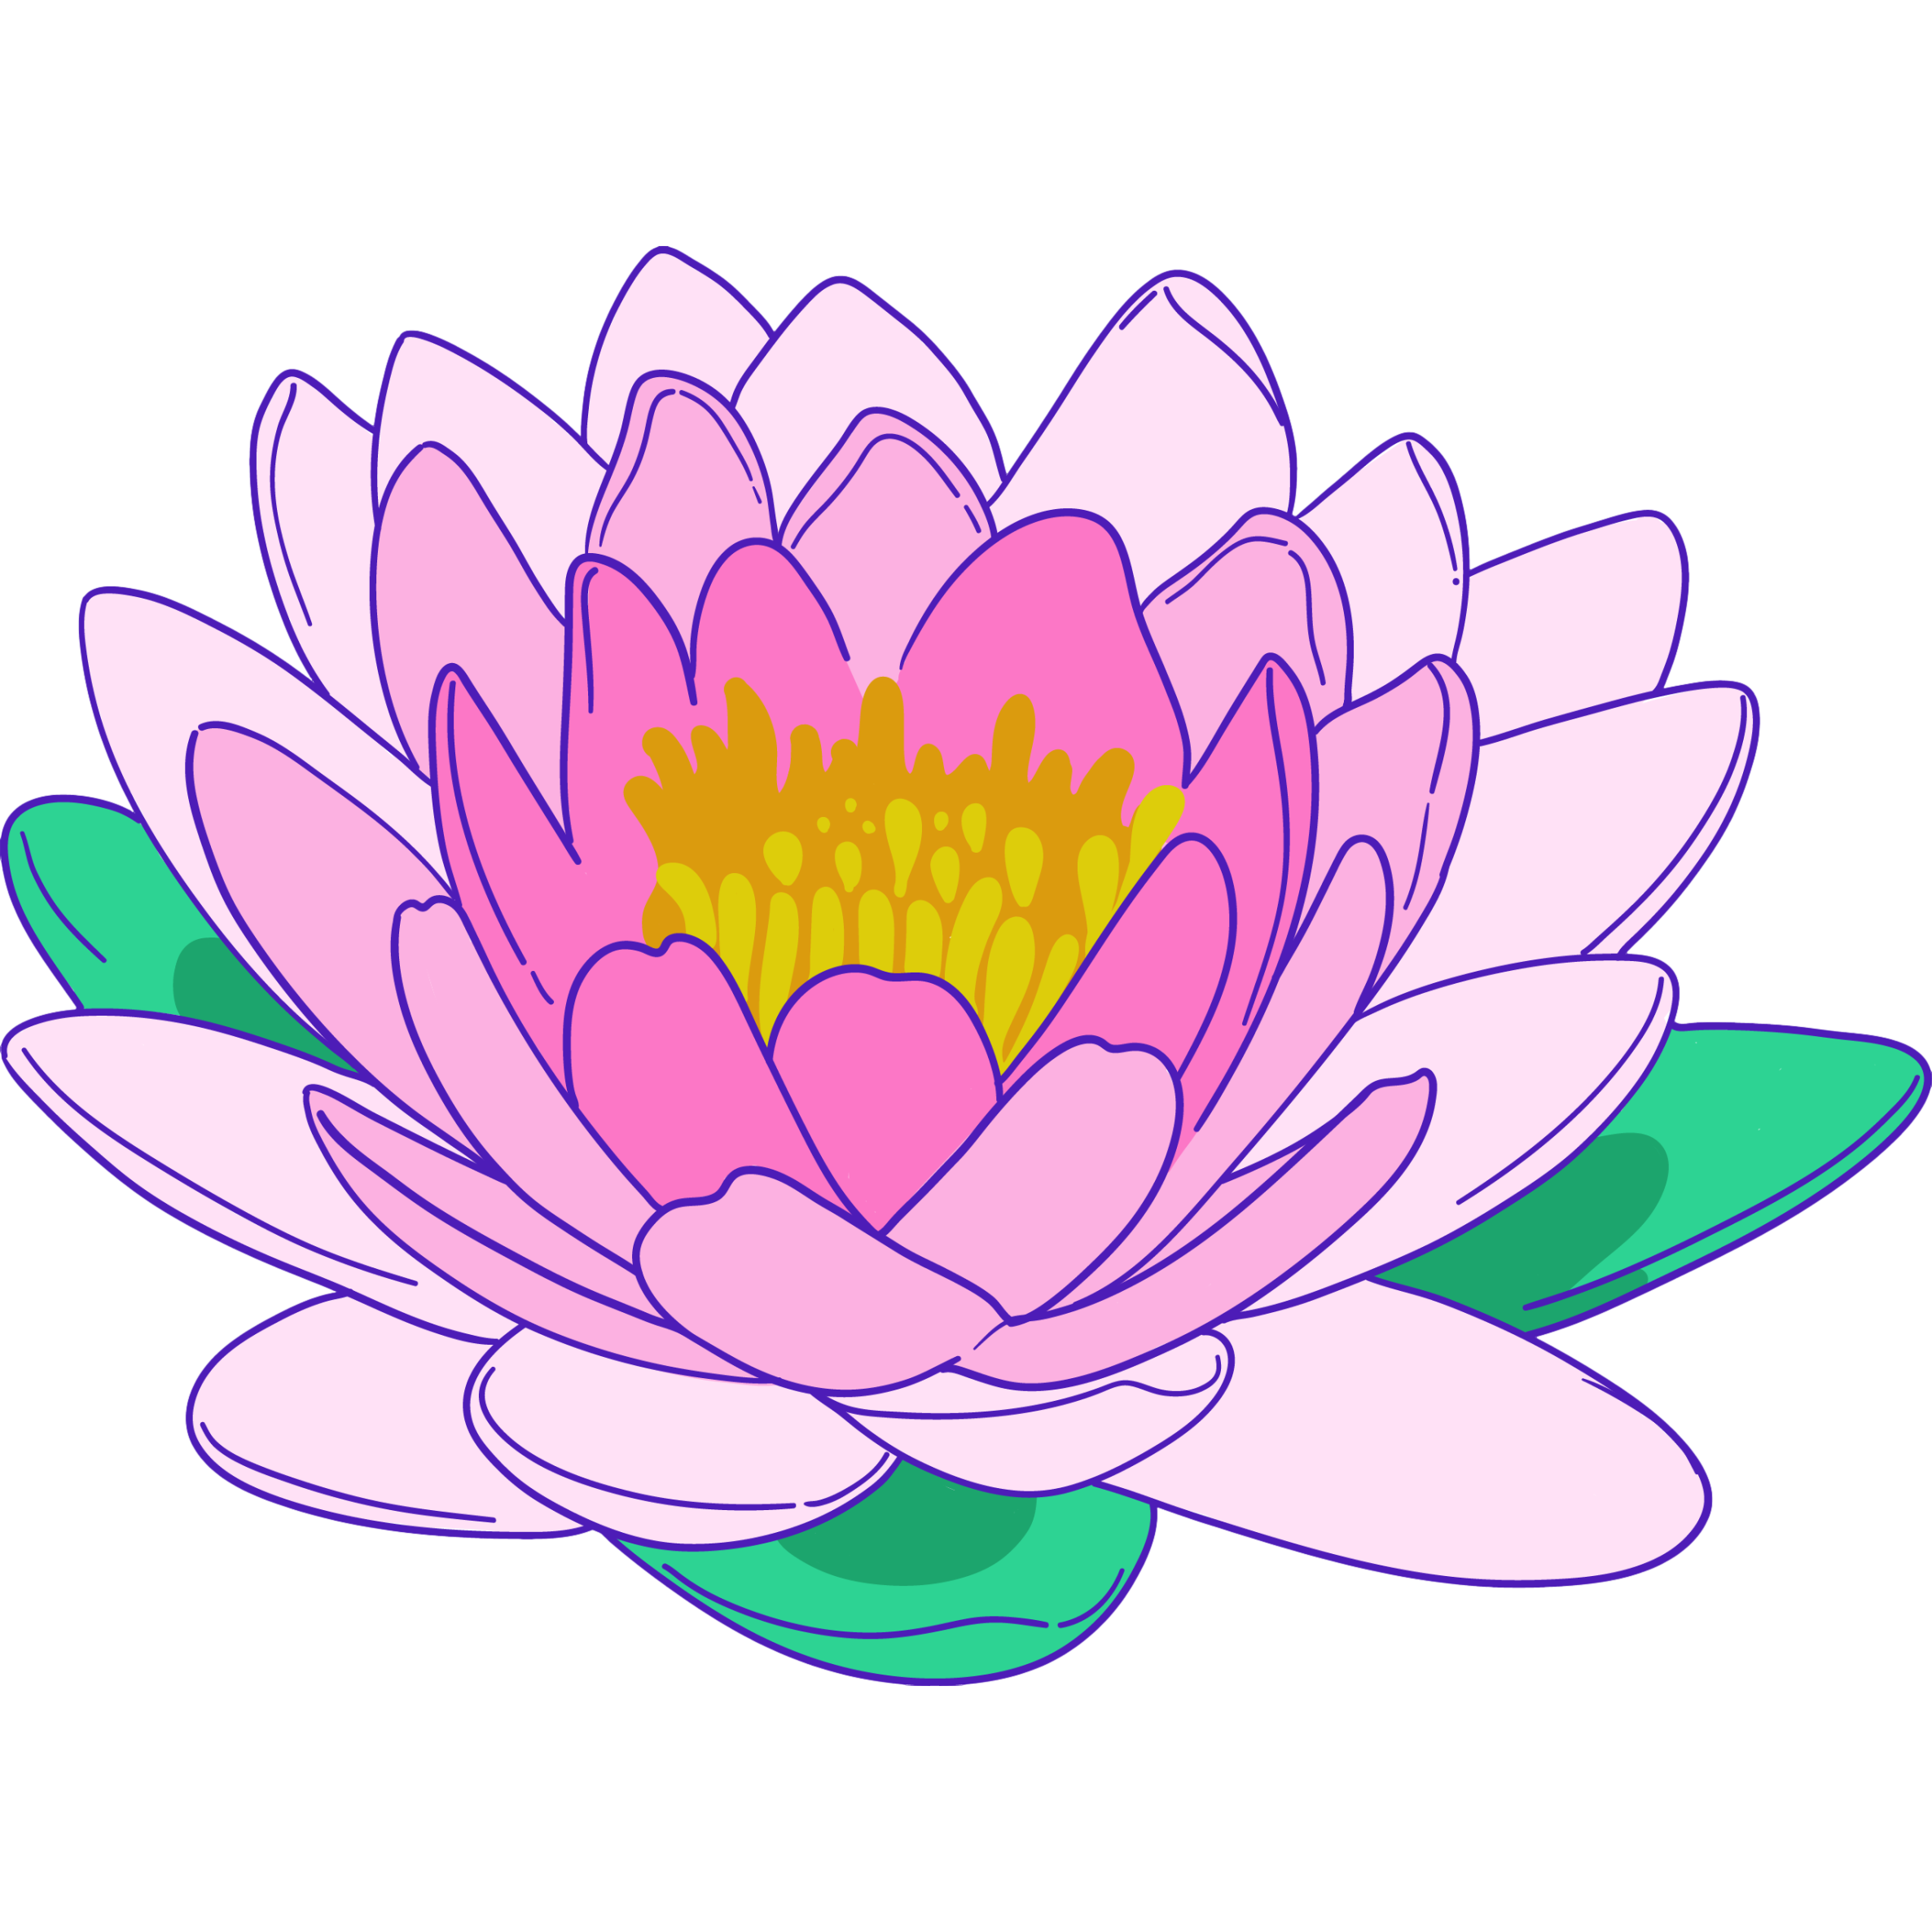 Lotus extract